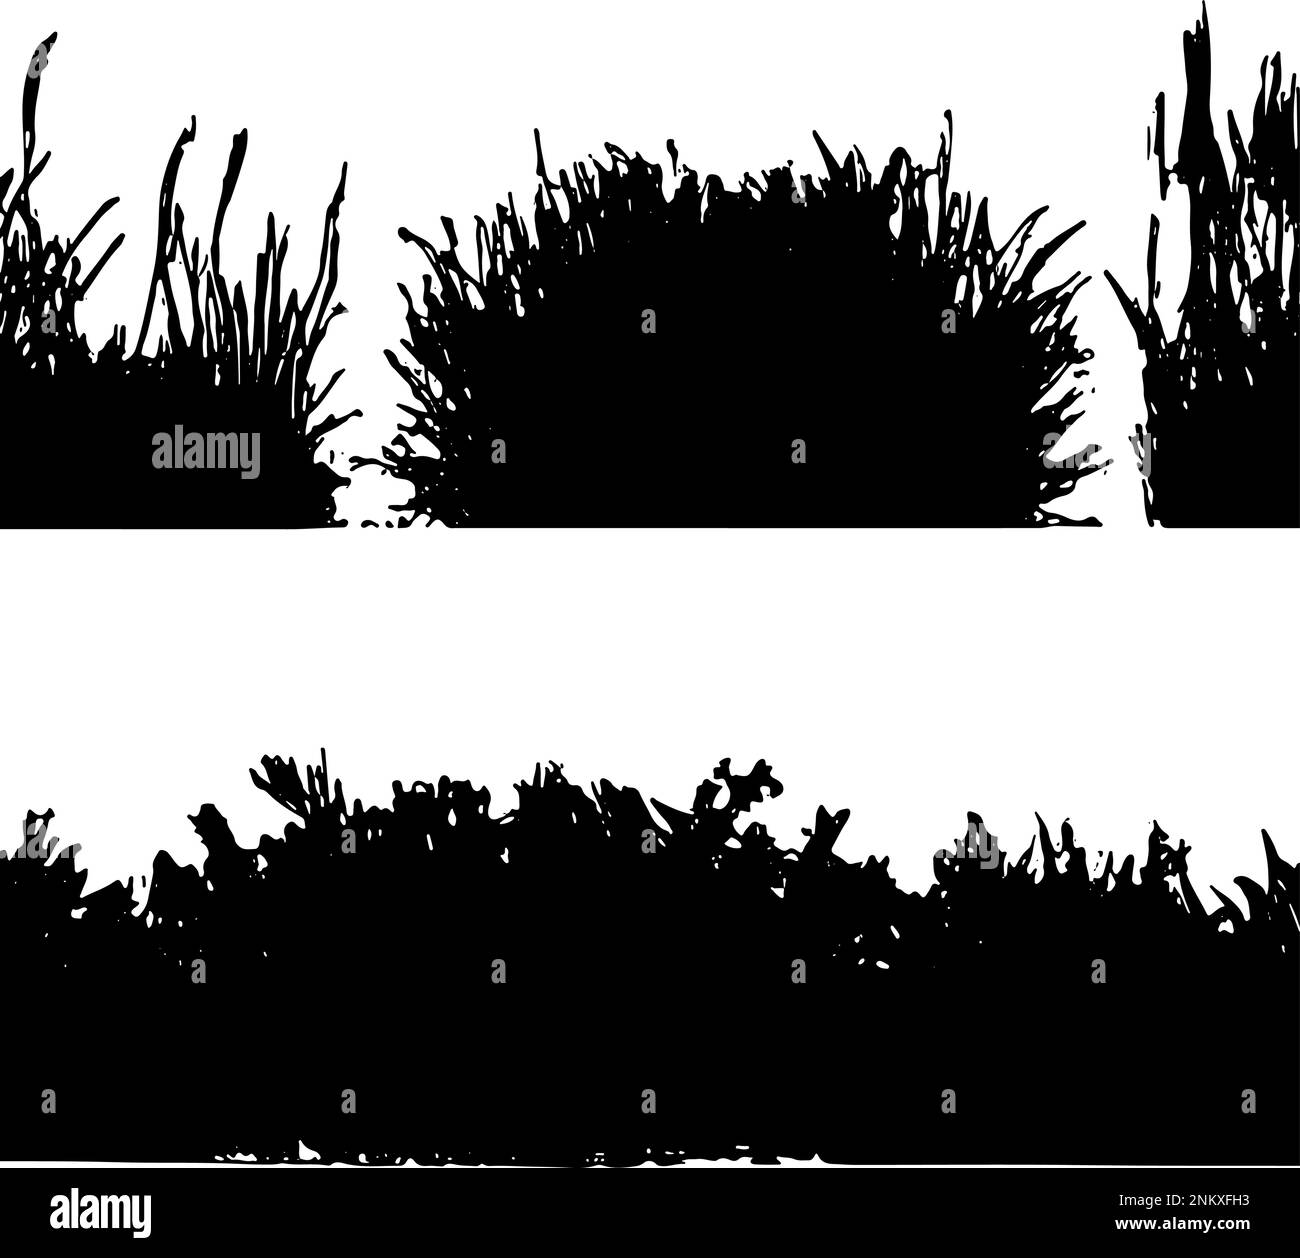 Silhouette vettoriale di diversi tipi di erba separata su sfondo bianco. Grafica vettoriale fatta a mano Illustrazione Vettoriale